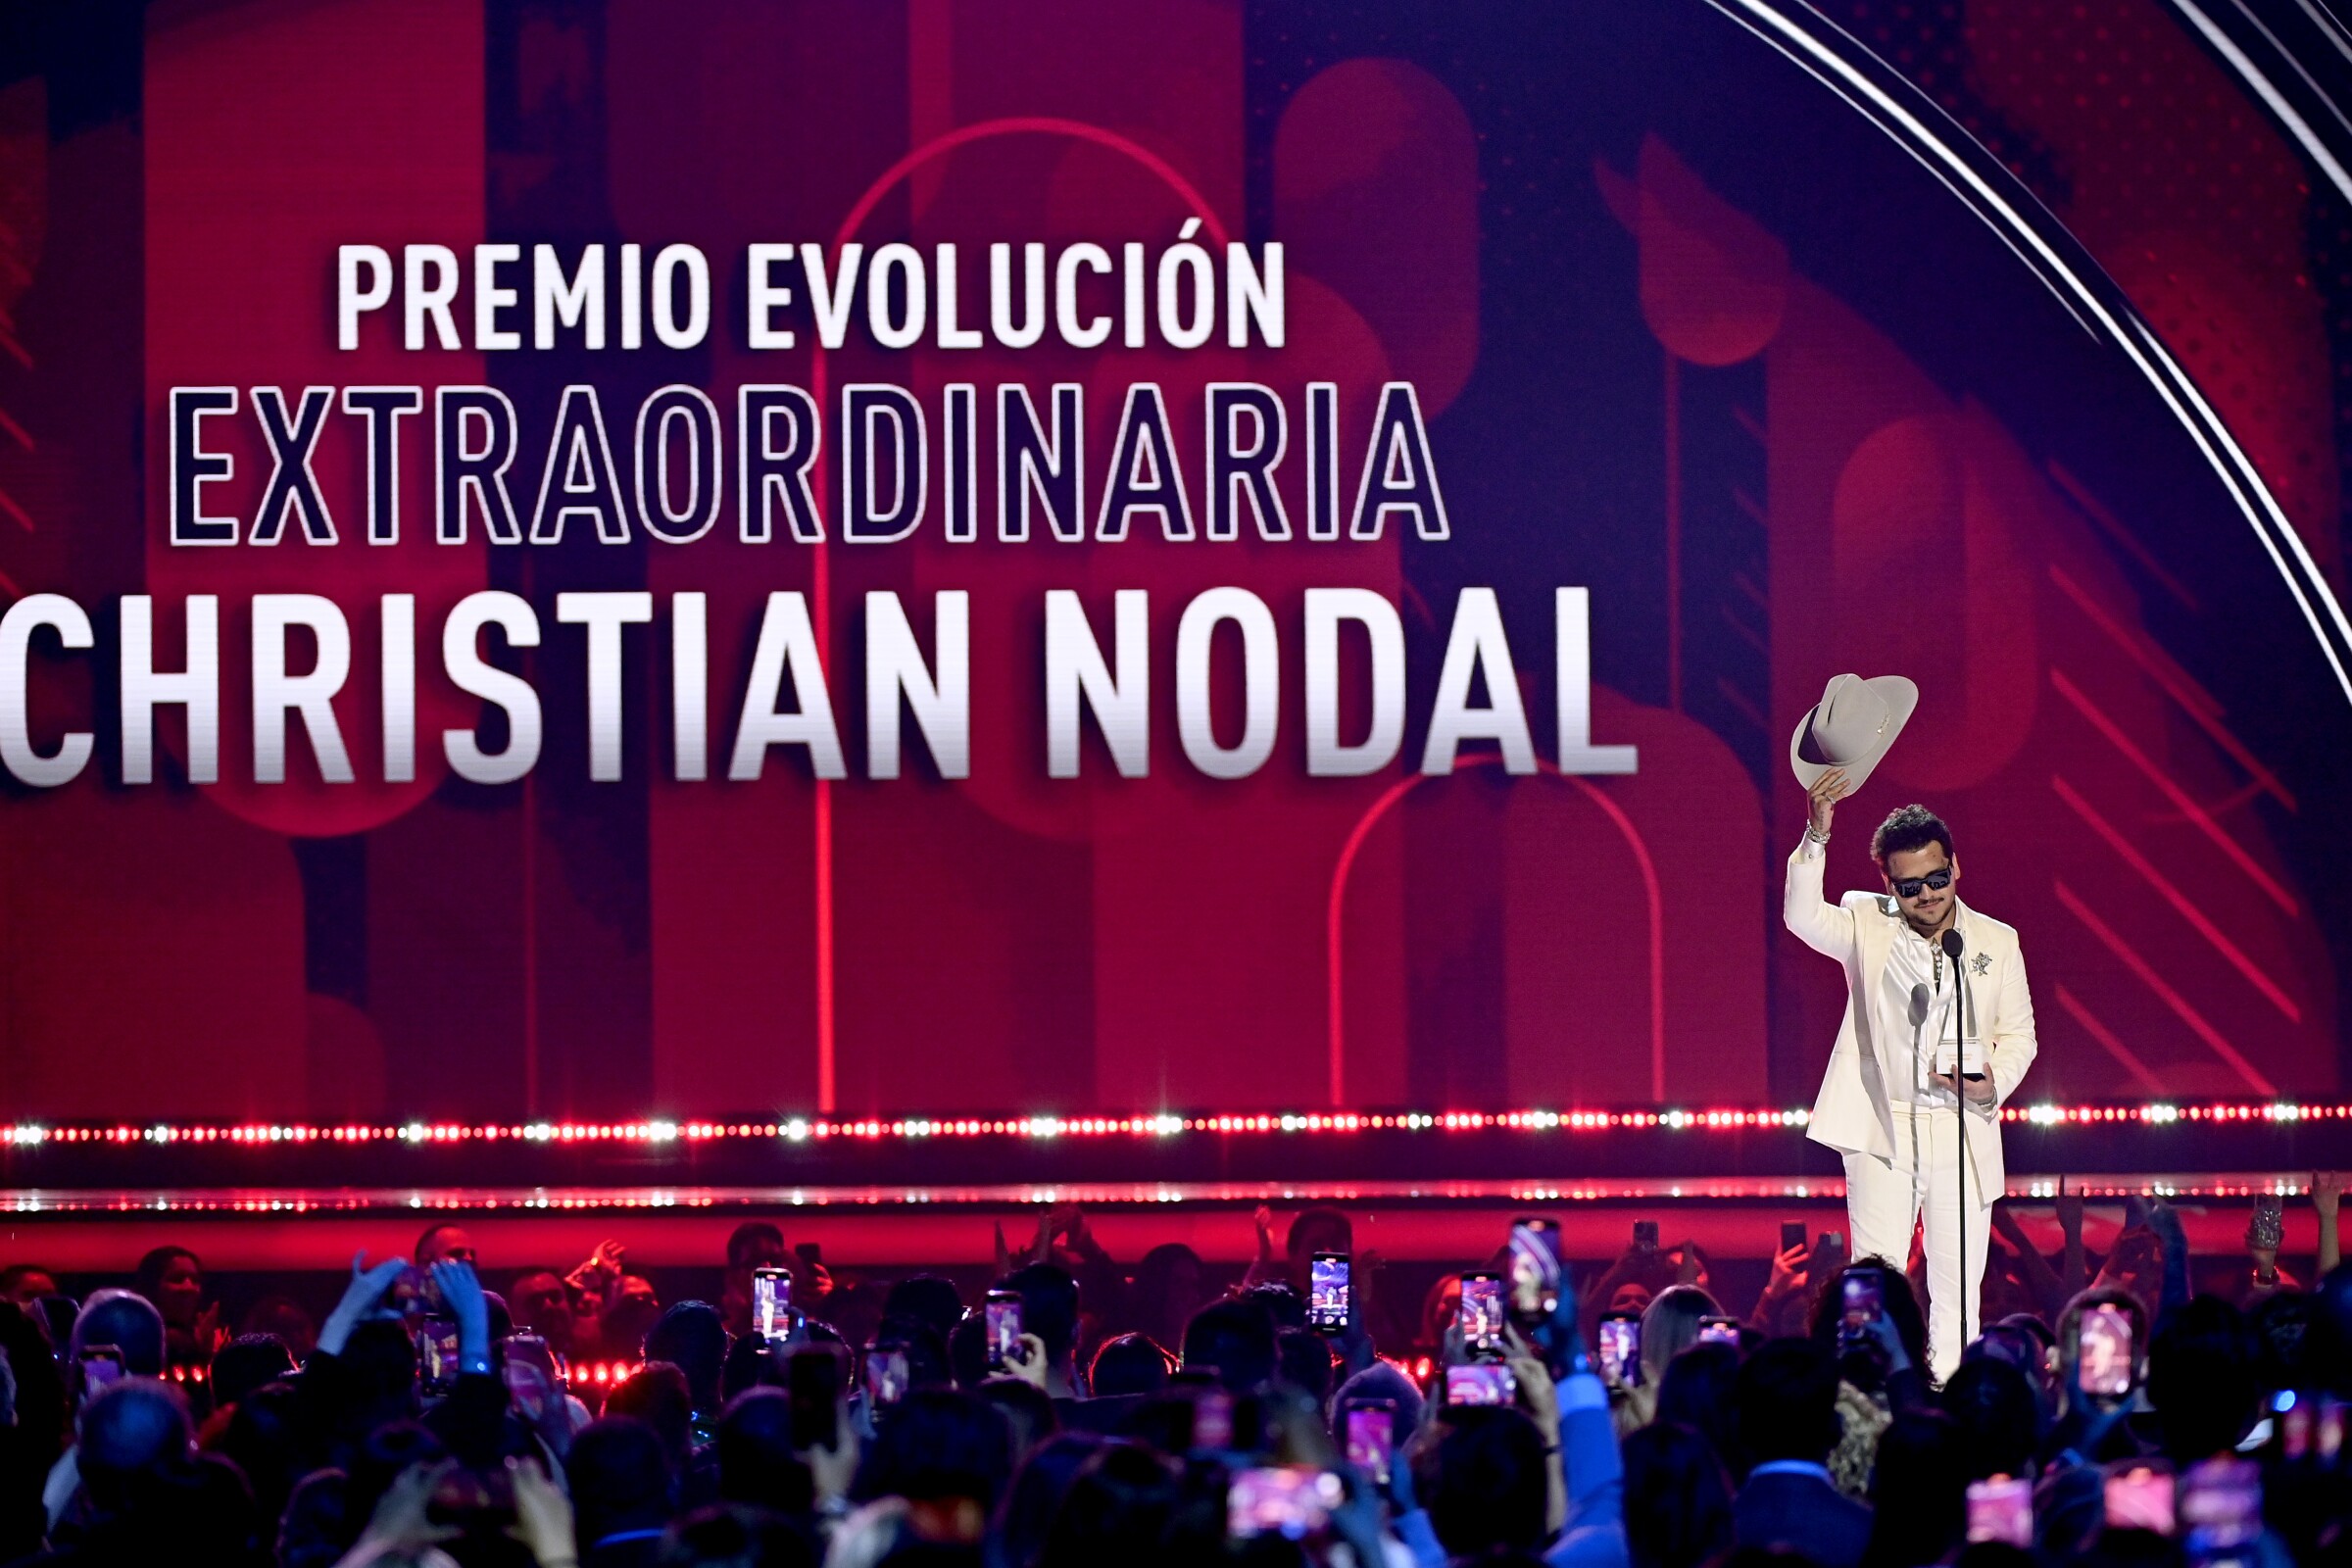 Christian Nodal recibió el premio Evolución Extraordinaria y cantó un popurrí de sus grandes éxitos.